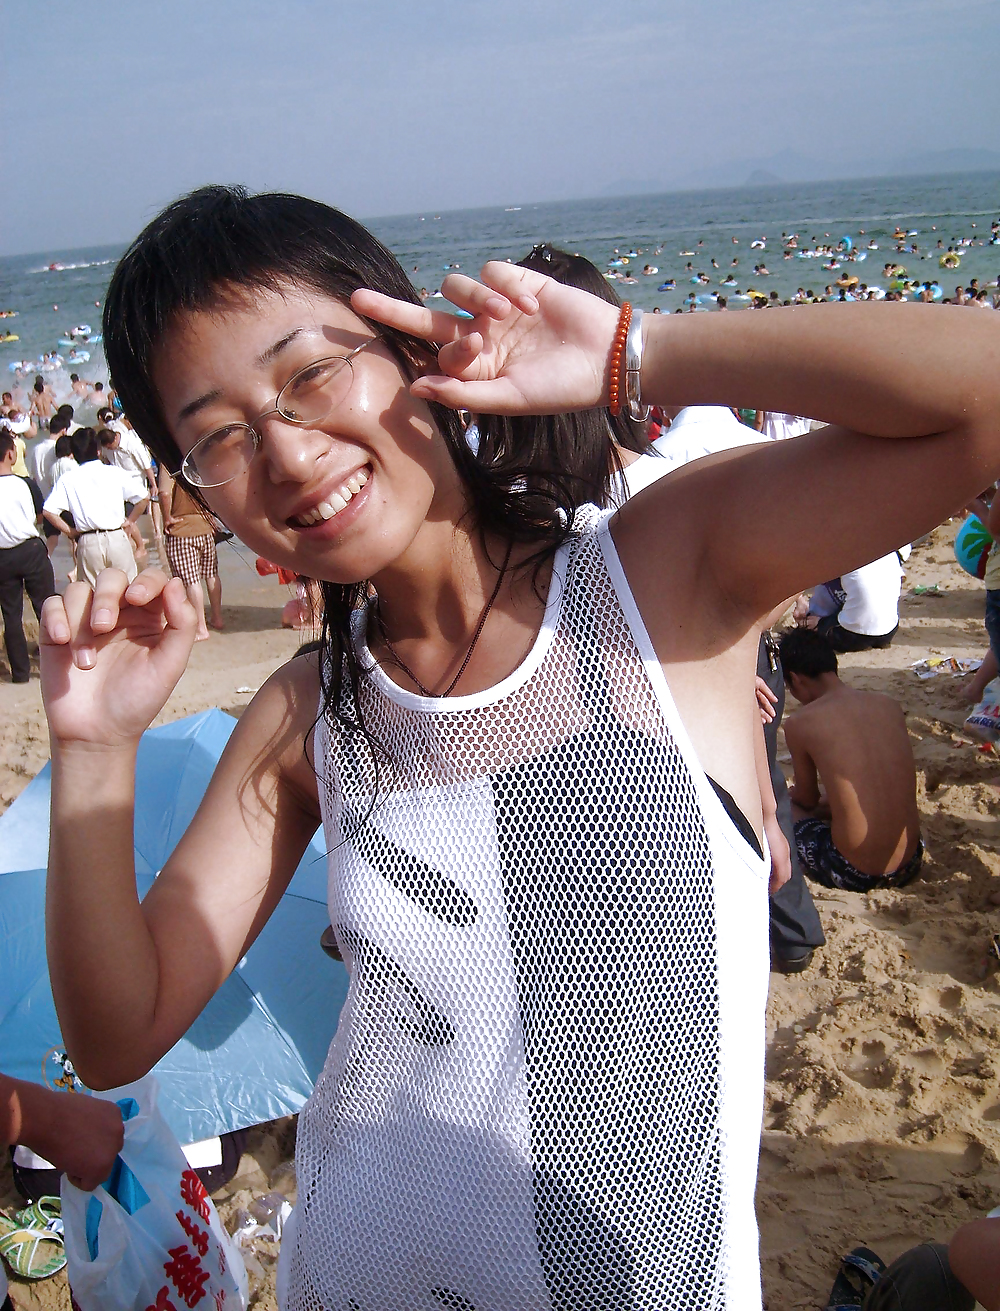 La mia visita alla spiaggia (belle asiatiche con ascelle pelose)
 #23640161